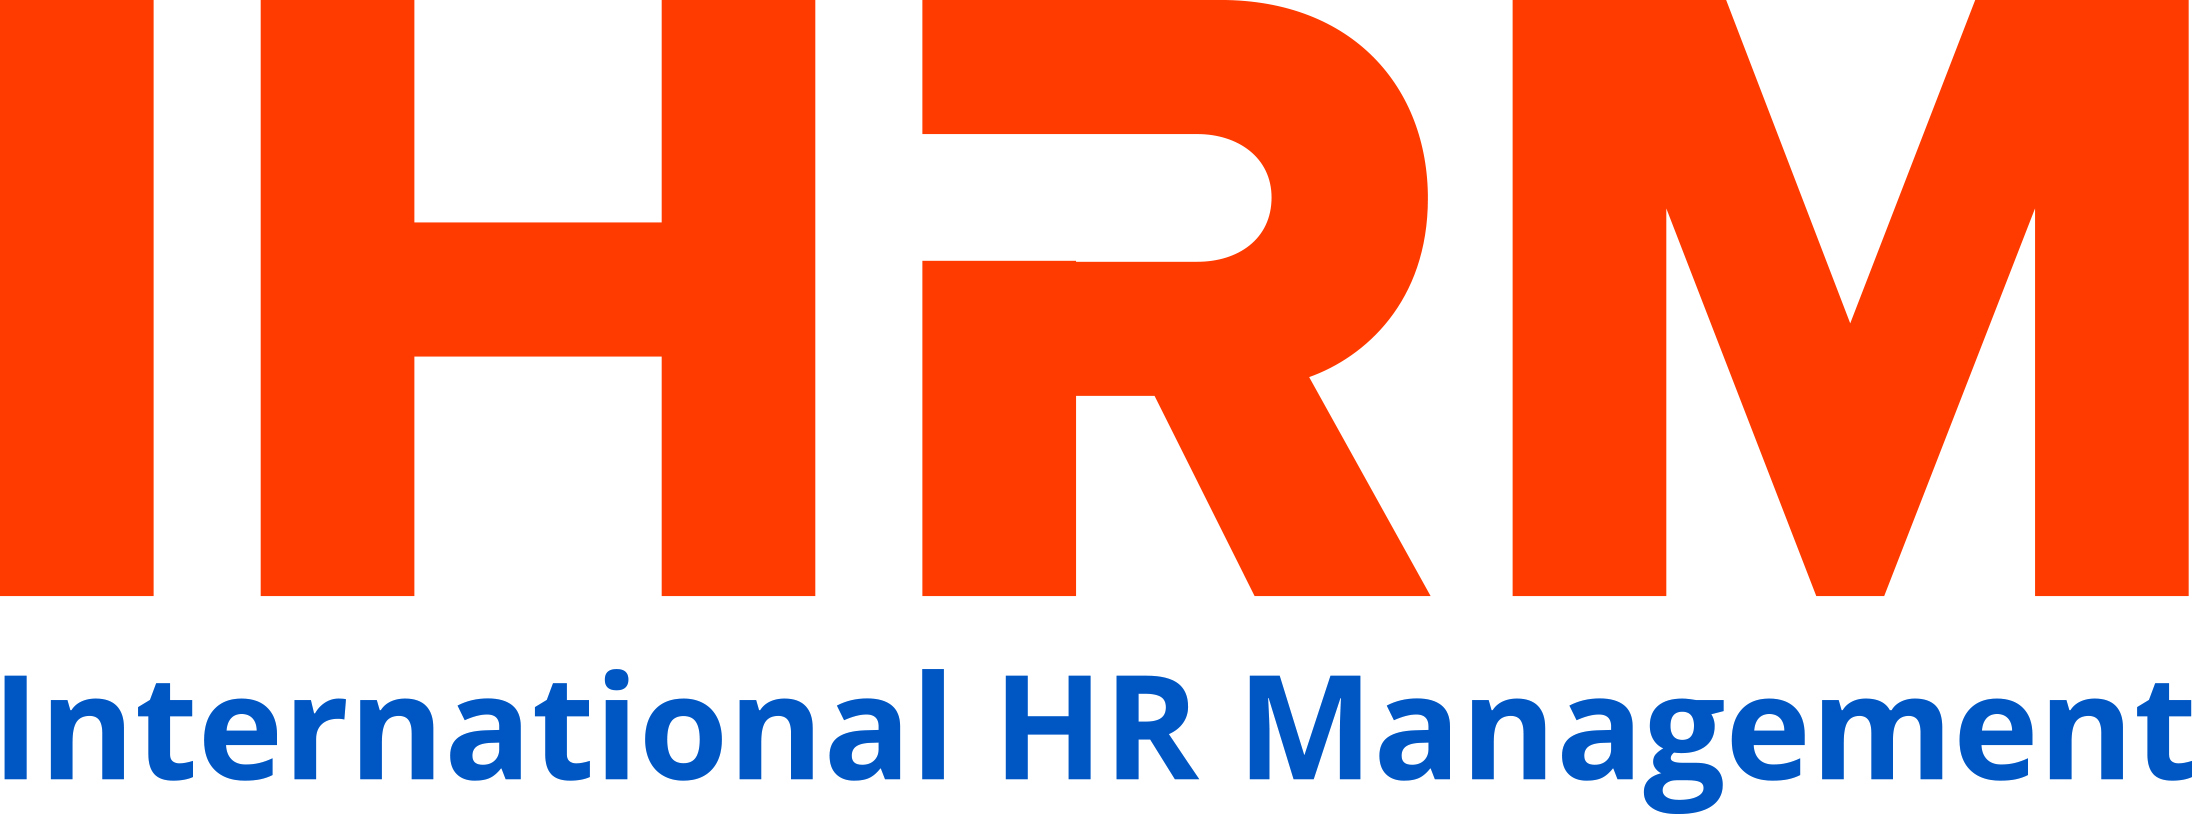 logo_IHRM-1.png